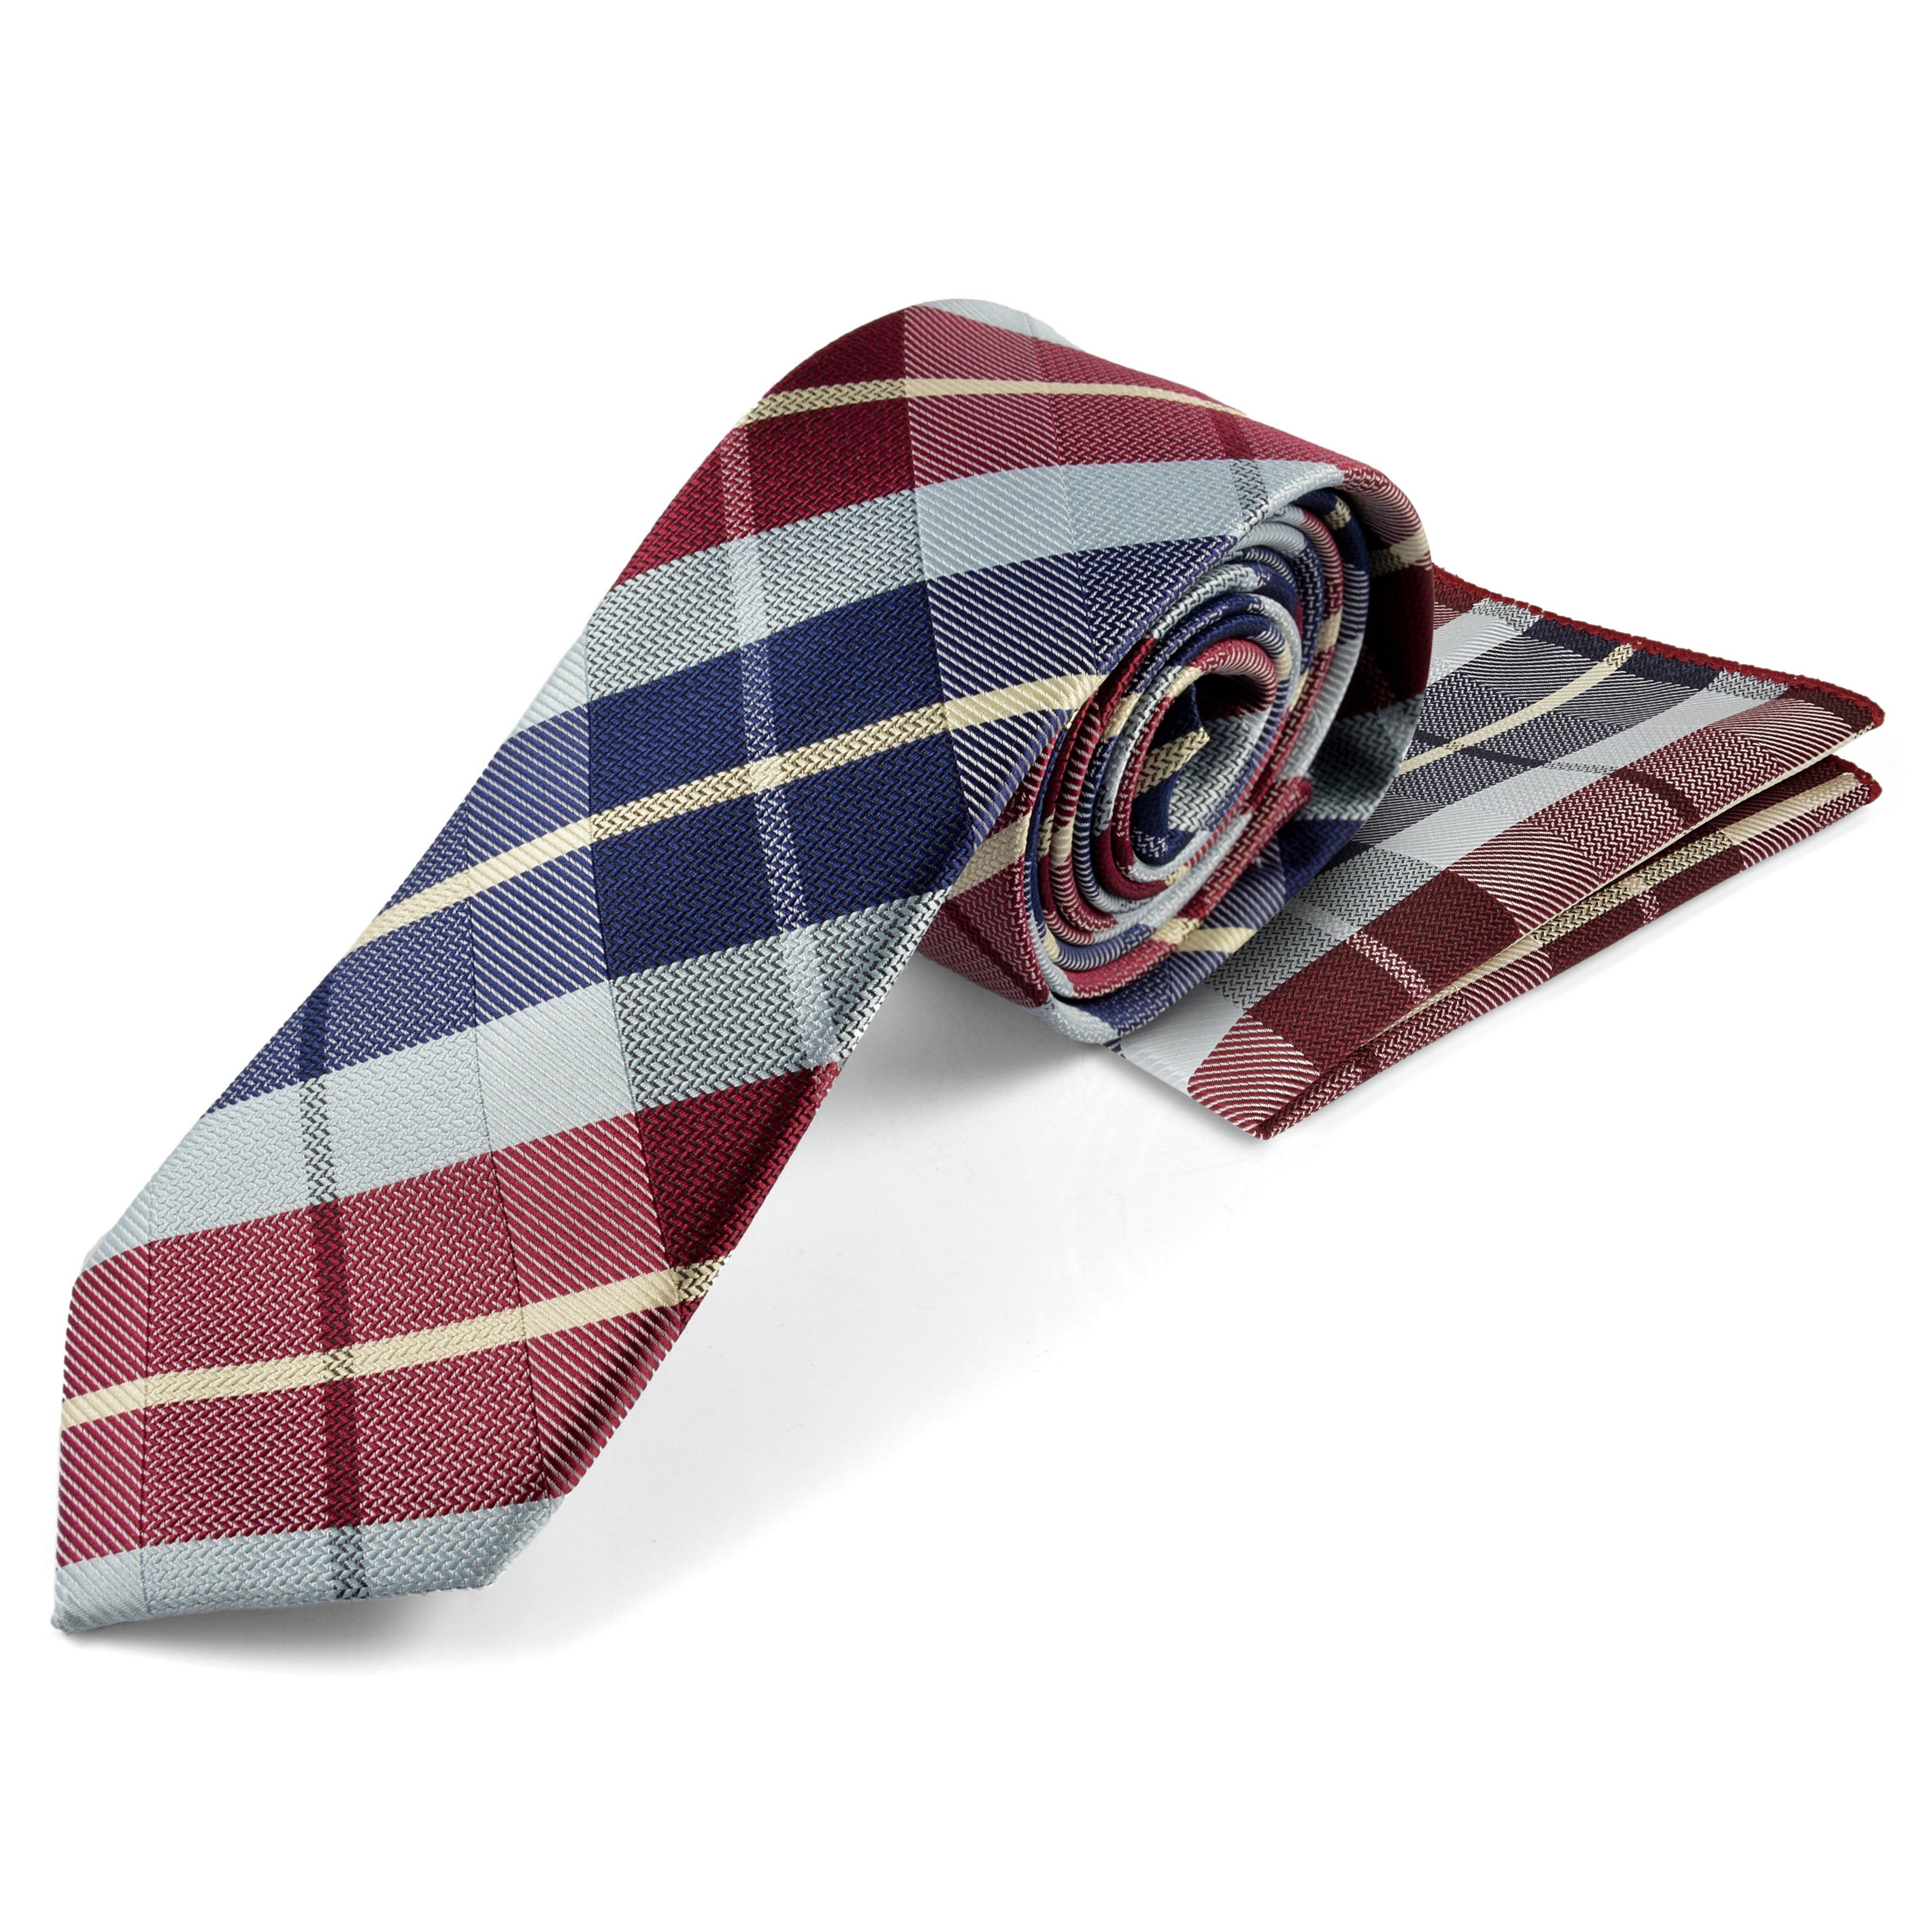 Kék és bordó kockás nyakkendő és díszzsebkendő szett